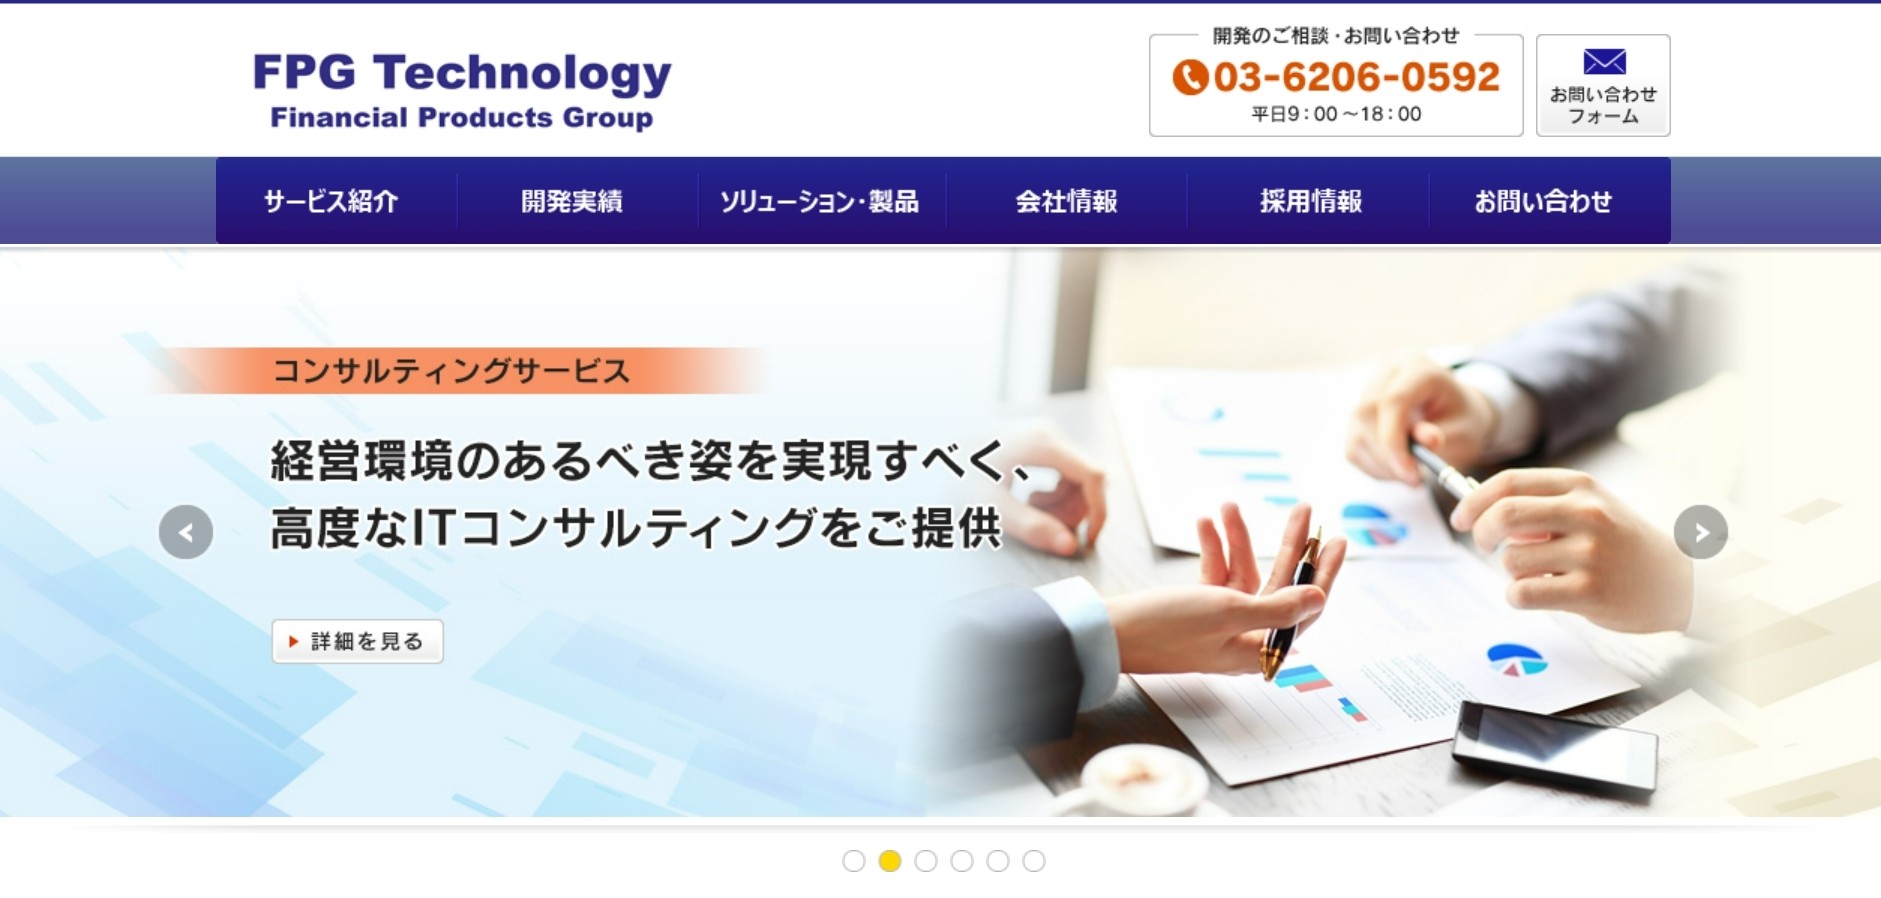 株式会社ＦＰＧテクノロジーの株式会社カタクラ・クロステクノロジー:ECサイト構築サービス